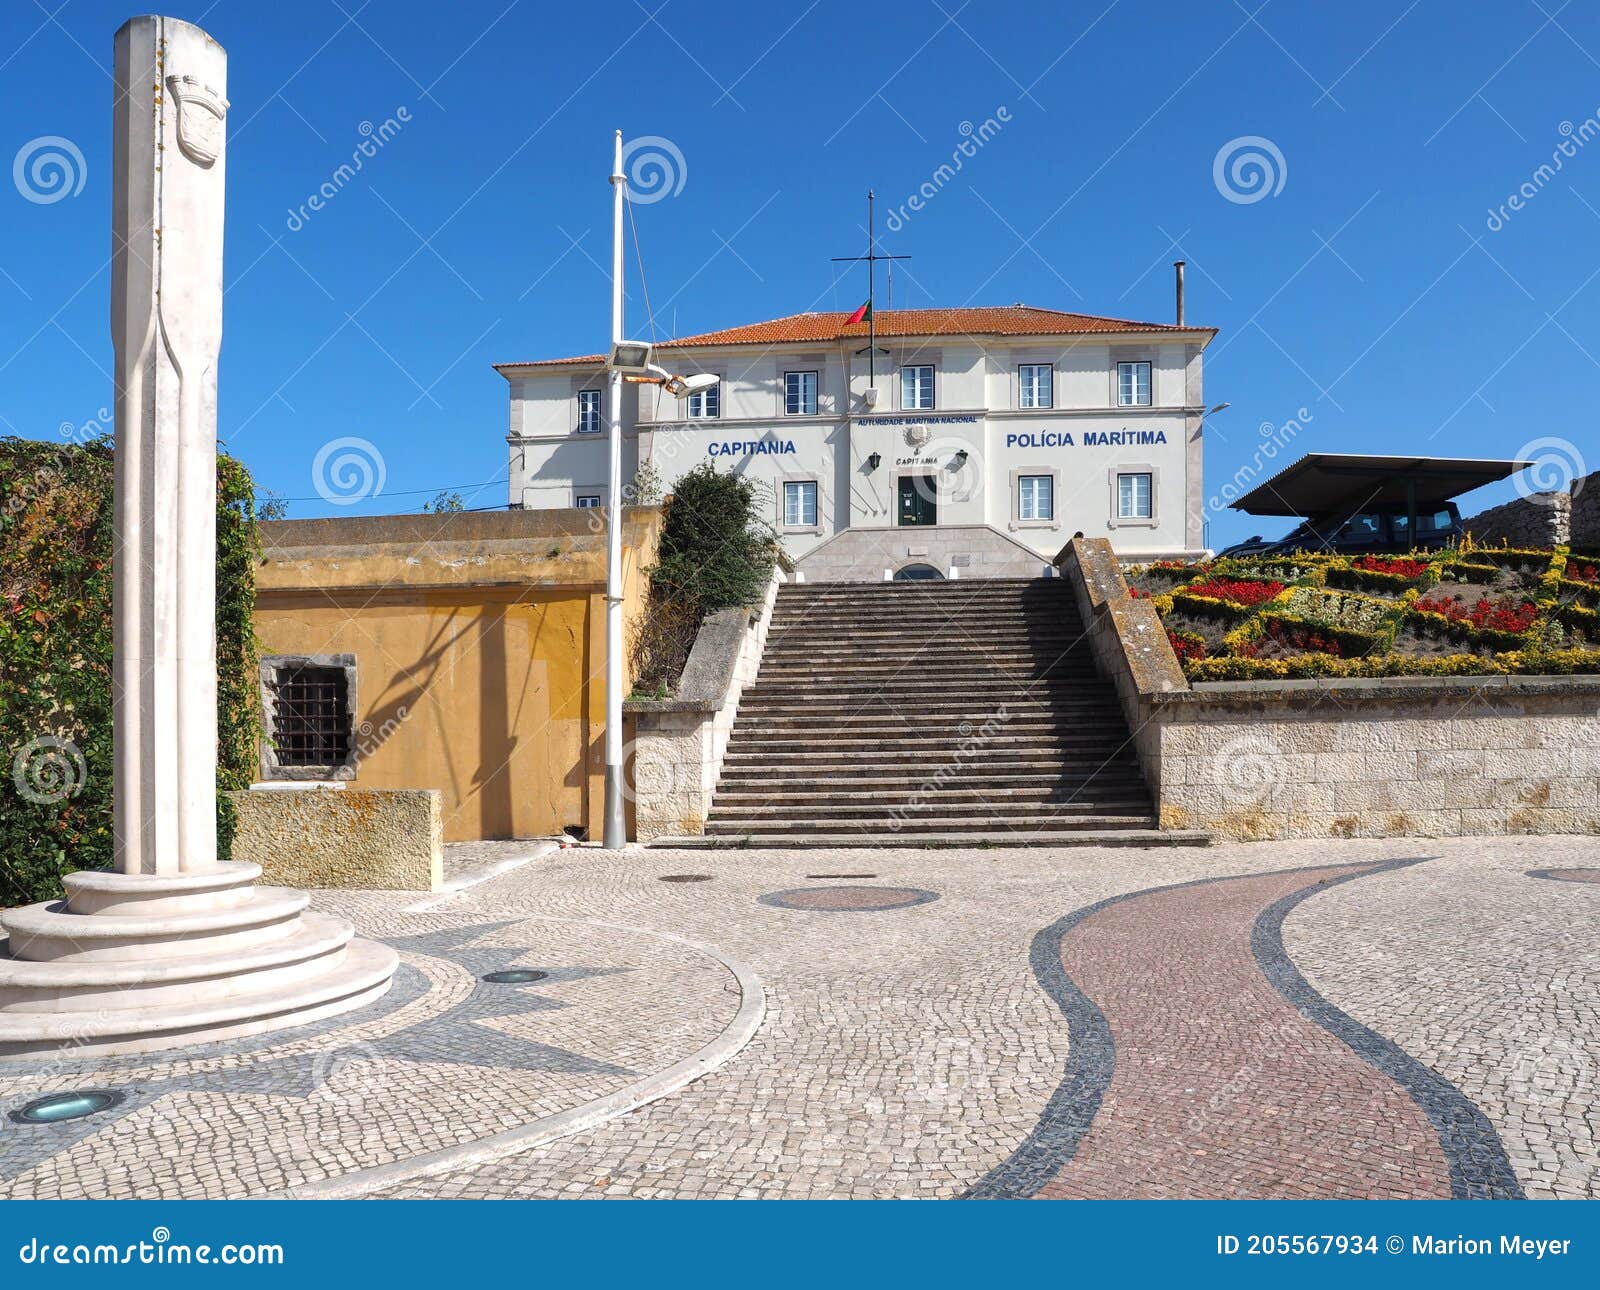 historic police building in peniche in portugal